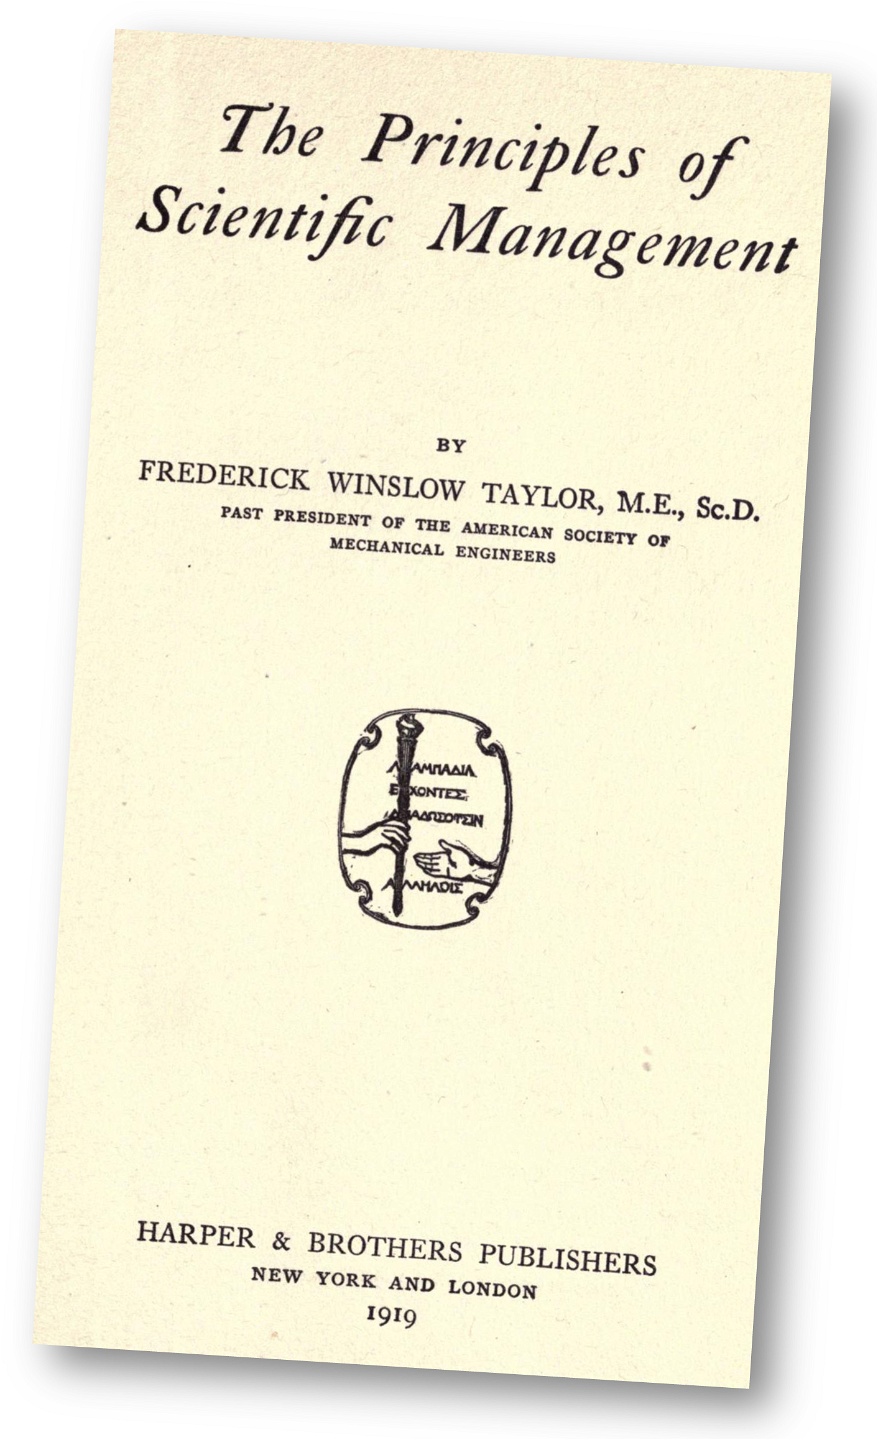 Taylors metod presenterades i bästsäljaren The Principles of Scientific Management 1911 och Taylor fick en -ism döpt efter sig.